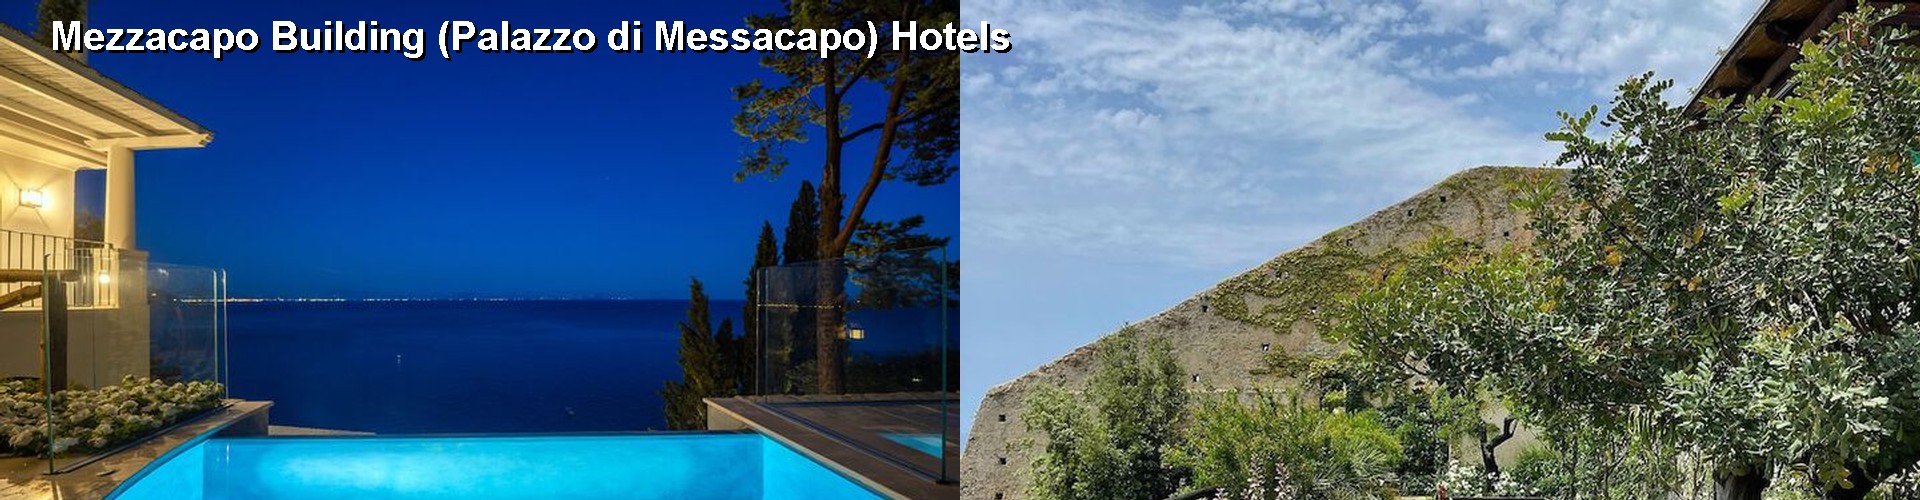 5 Best Hotels near Mezzacapo Building (Palazzo di Messacapo)